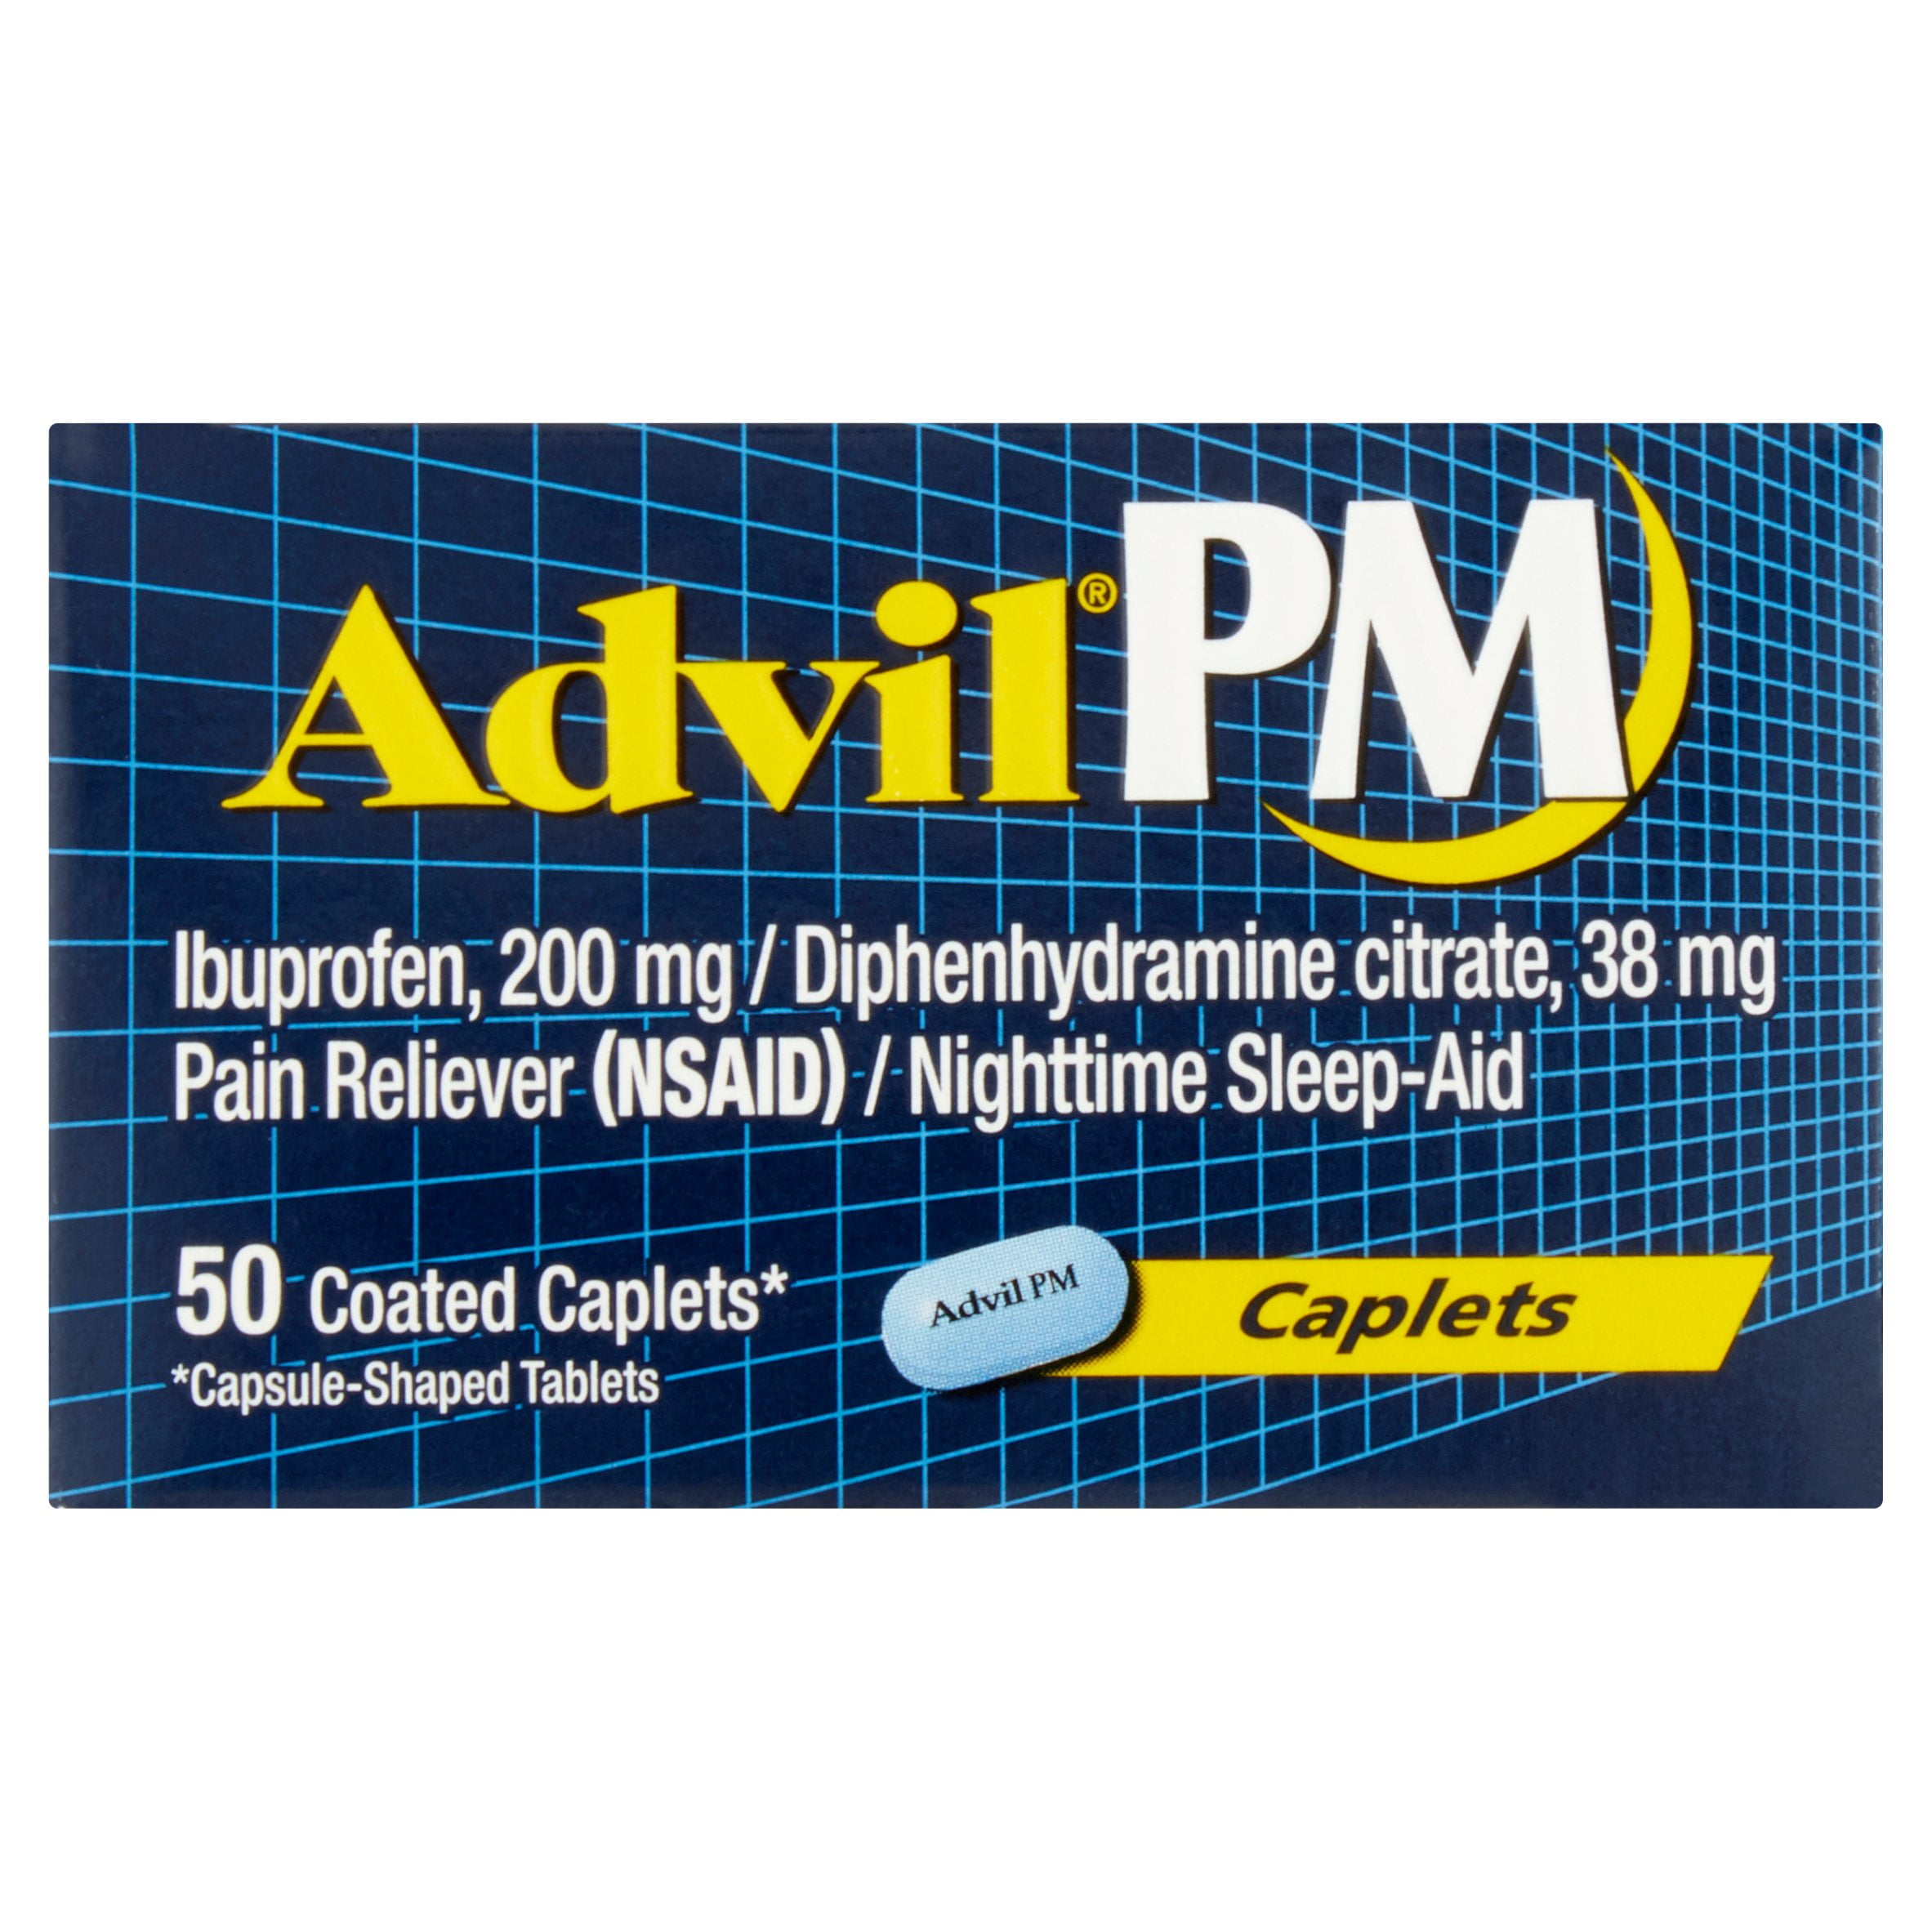 Can pregnant women take Advil?